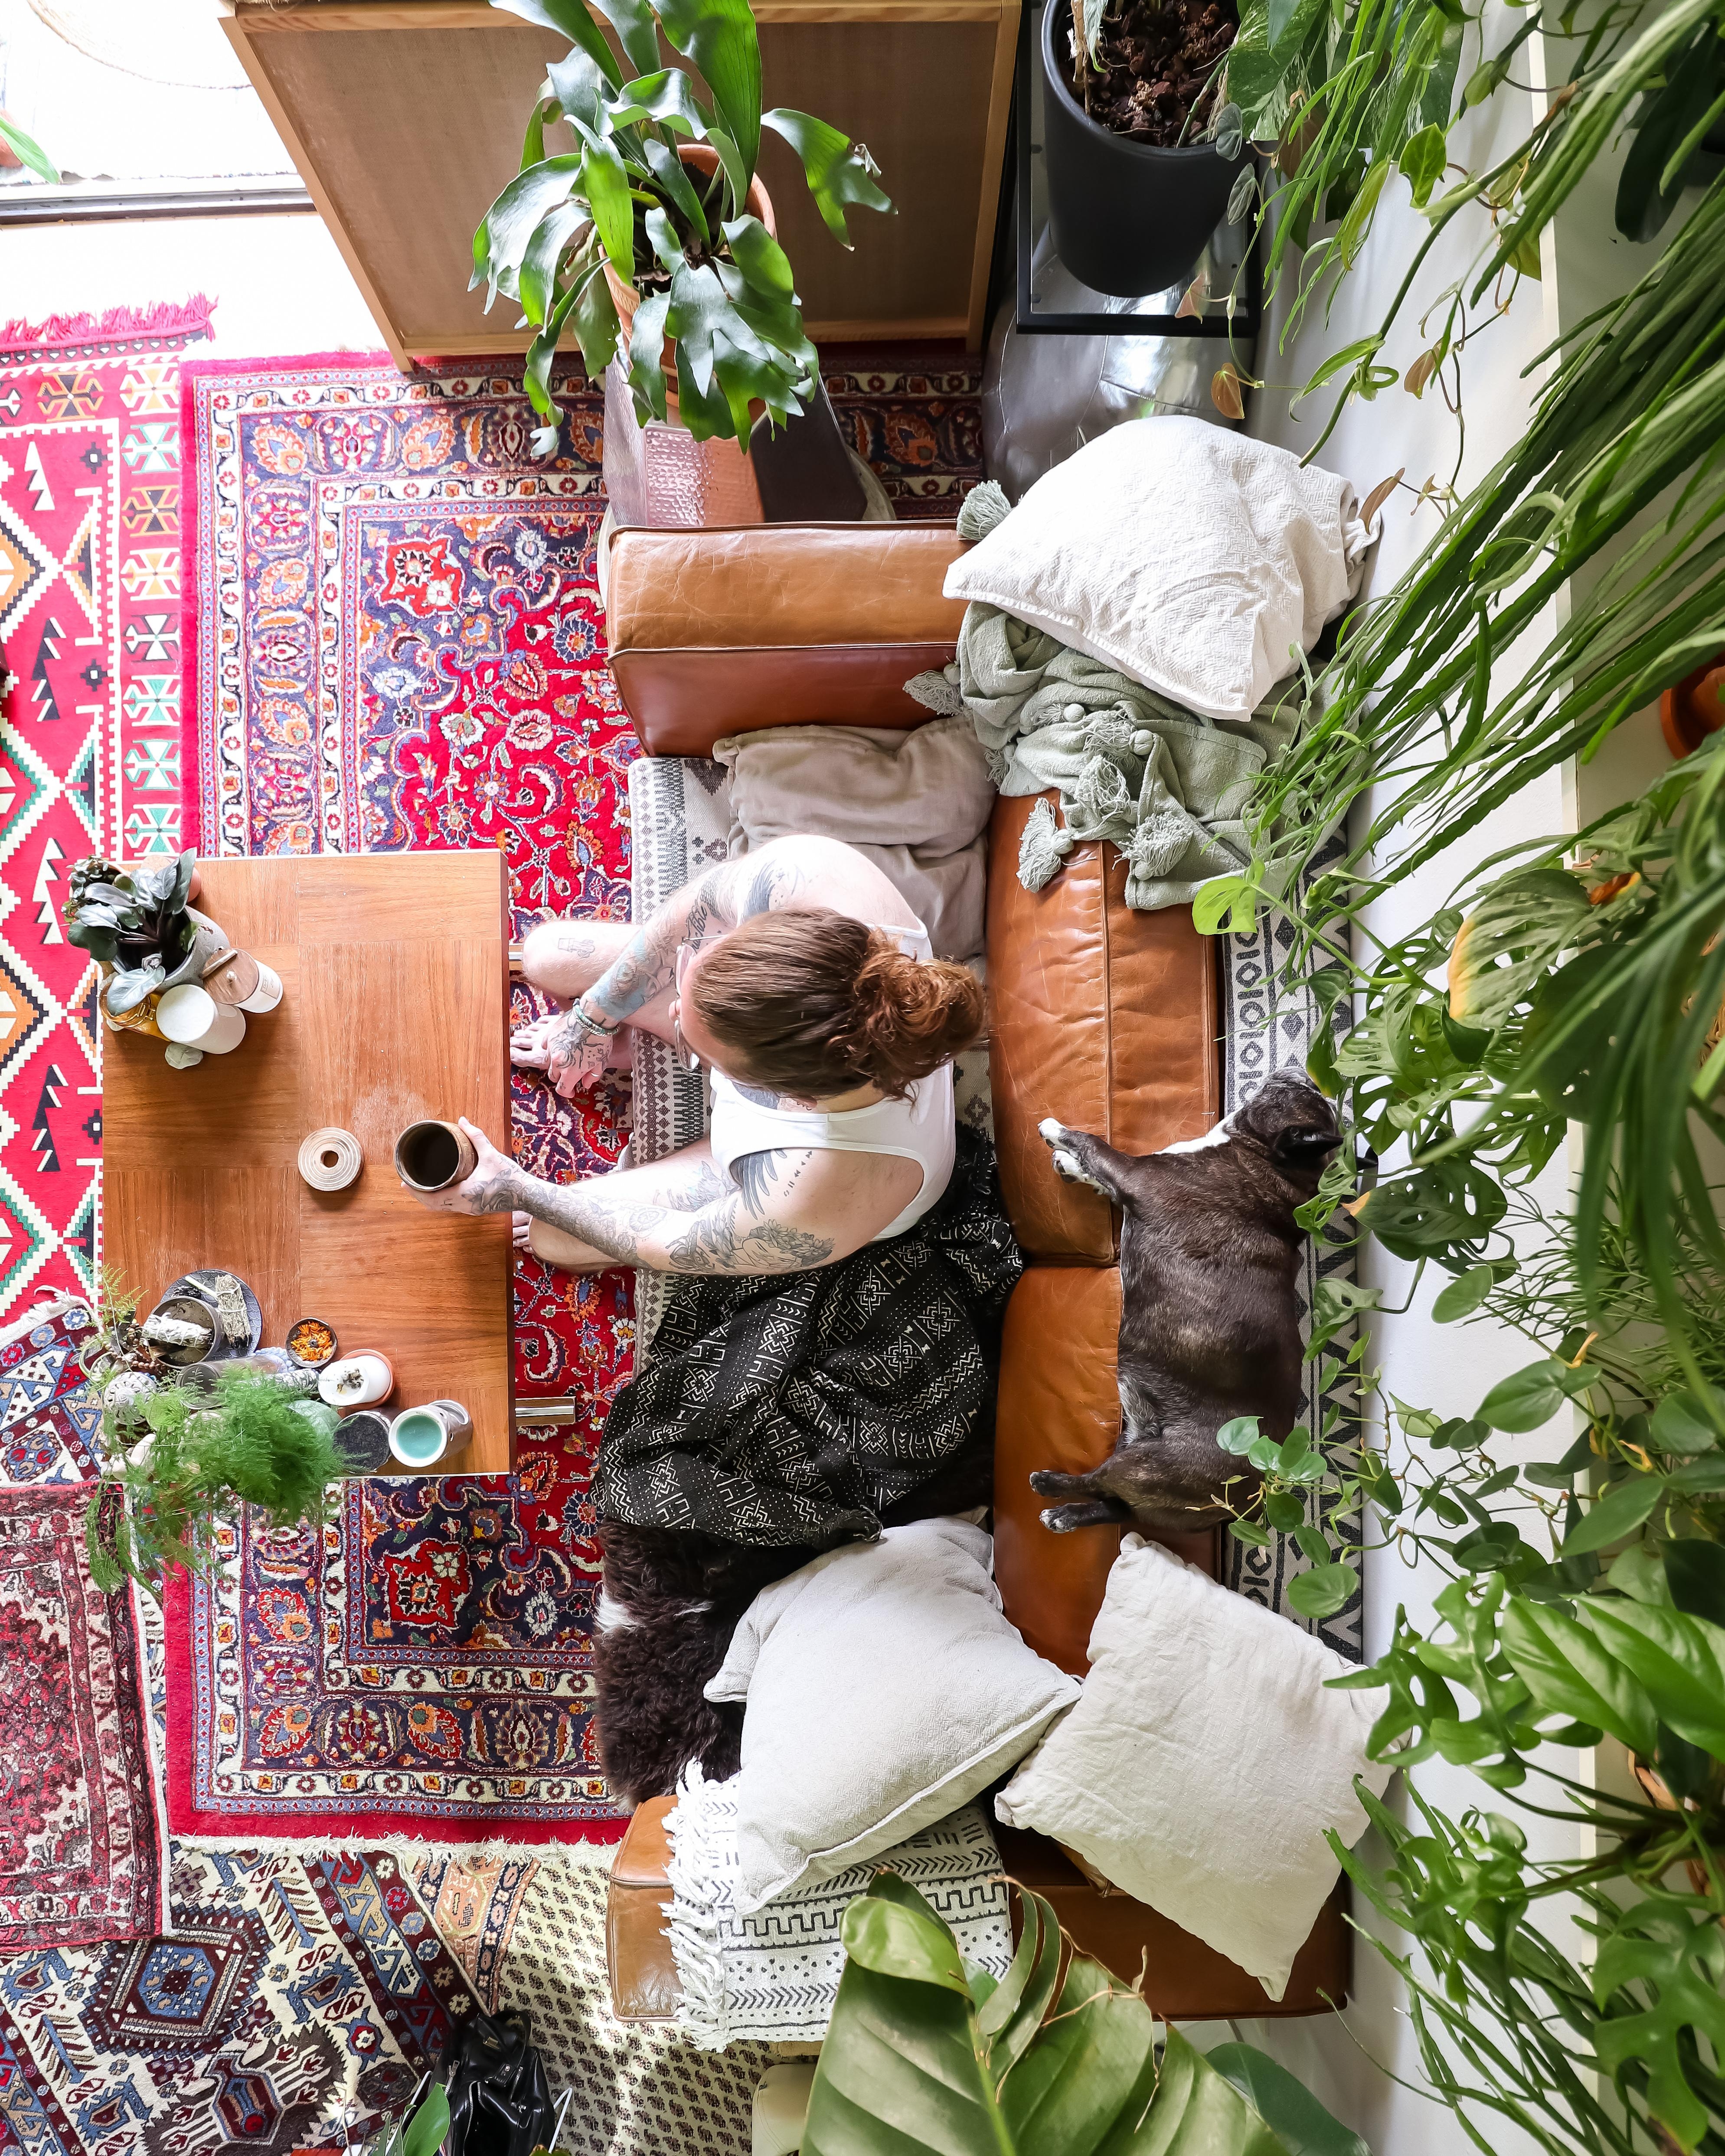 Feierabend #Wohnzimmer #couchstyle #Couch #Tisch #Sofa #Pflanzen #hygge 